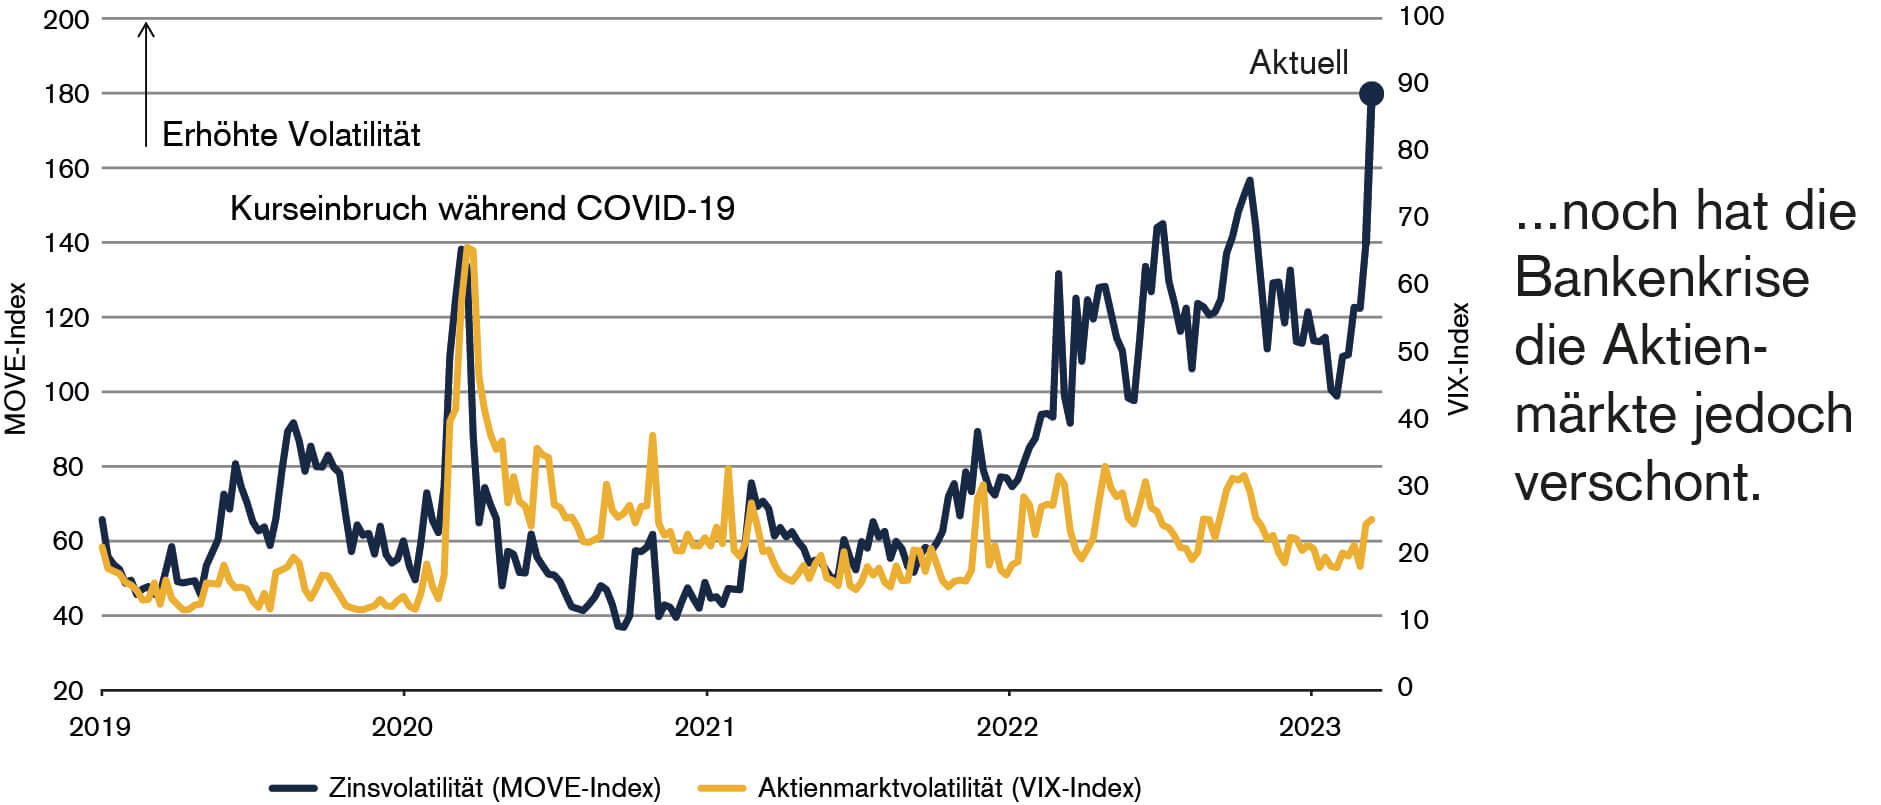 Wie das Diagramm zeigt, stieg die Volatilität während der COVID-19-Pandemie sowohl am Aktien- als auch am Anleihenmarkt, aber die Krise des Bankensektors hat die Aktienmärkte bis jetzt verschont